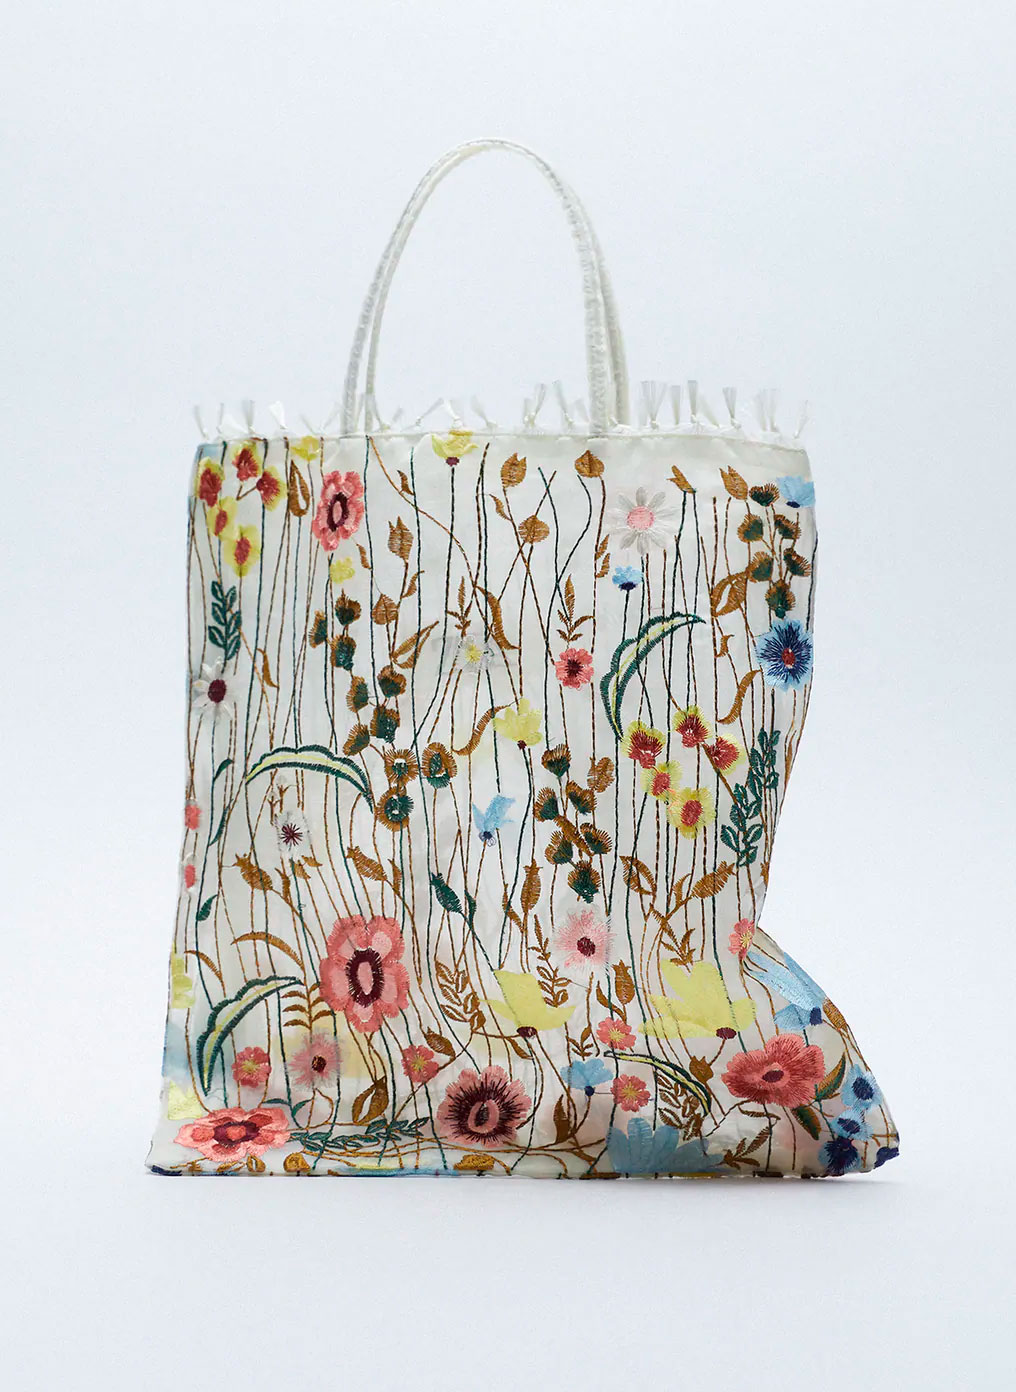 Zara versiona a Gucci en el que el bolso más de primavera | Moda